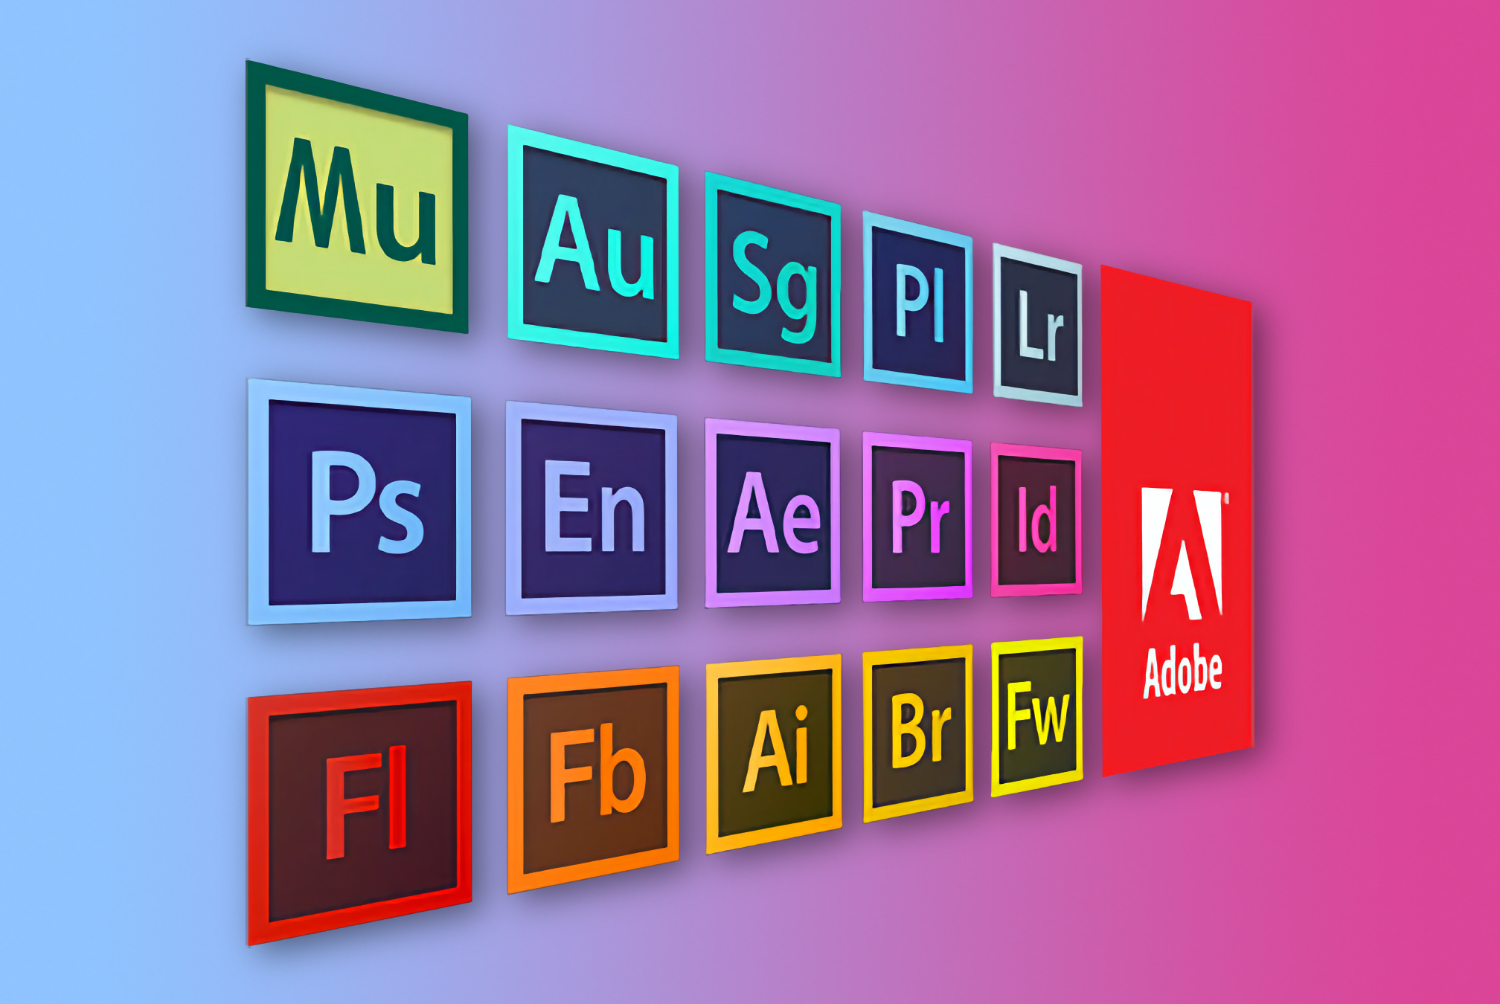 Adobe сделала Photoshop, After Effects и прочий софт бесплатным для пользователей из России. Но есть нюанс